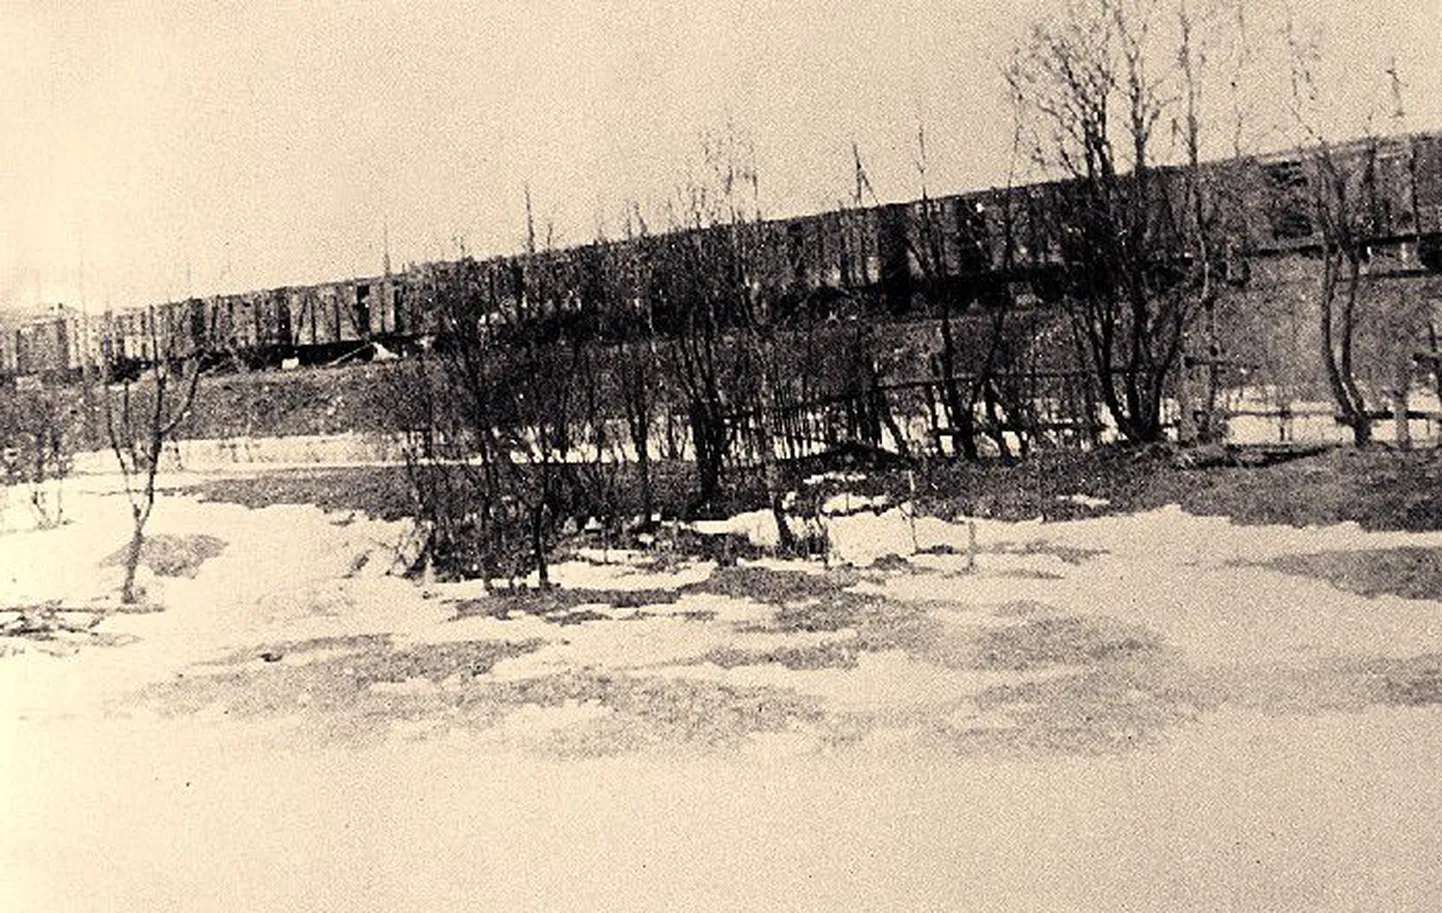 Тысячи вагонов с людьми: в период мартовской депортации в Сибирь было отправлено 1057 вагонов с людьми. Этот состав запечатлел на фото Густав Кульп 25 марта 1949 года в Кейла.